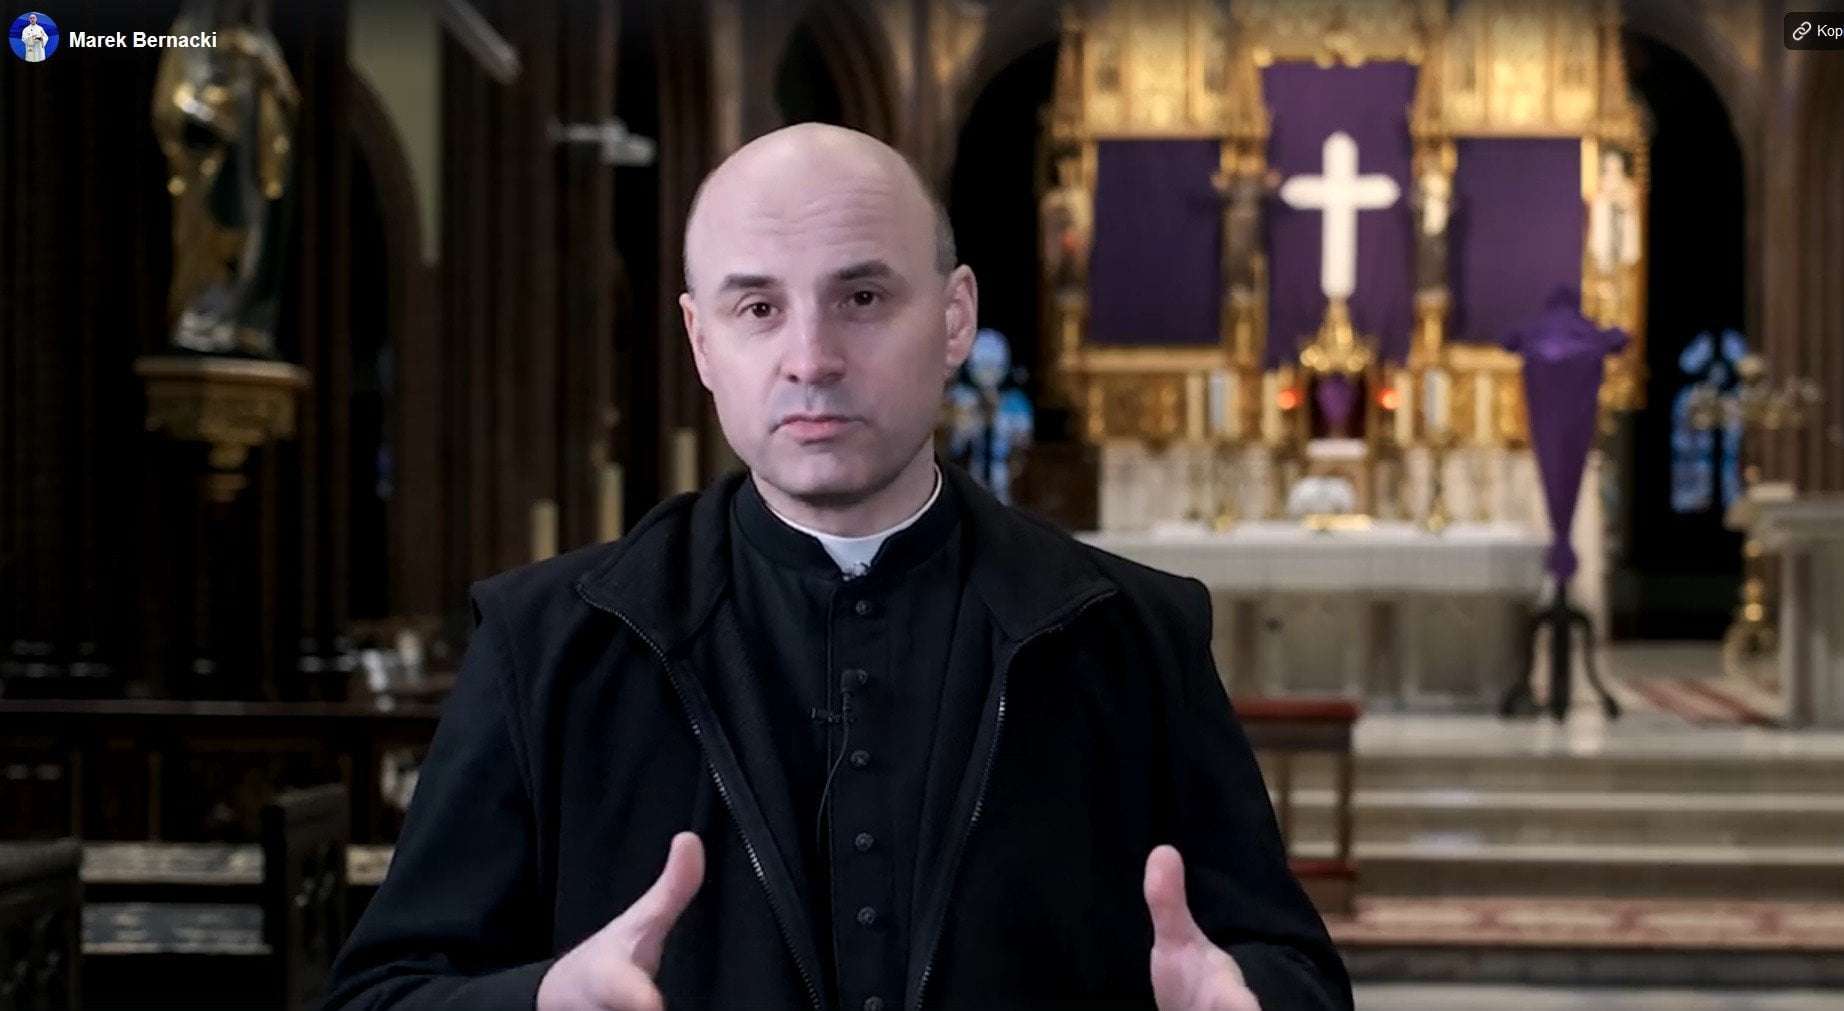 FB Ks. Marek Bernacki prosi, by w najbliższą środę przyjść do bazyliki w Rybniku na modlitwy o pokój w Ukrainie